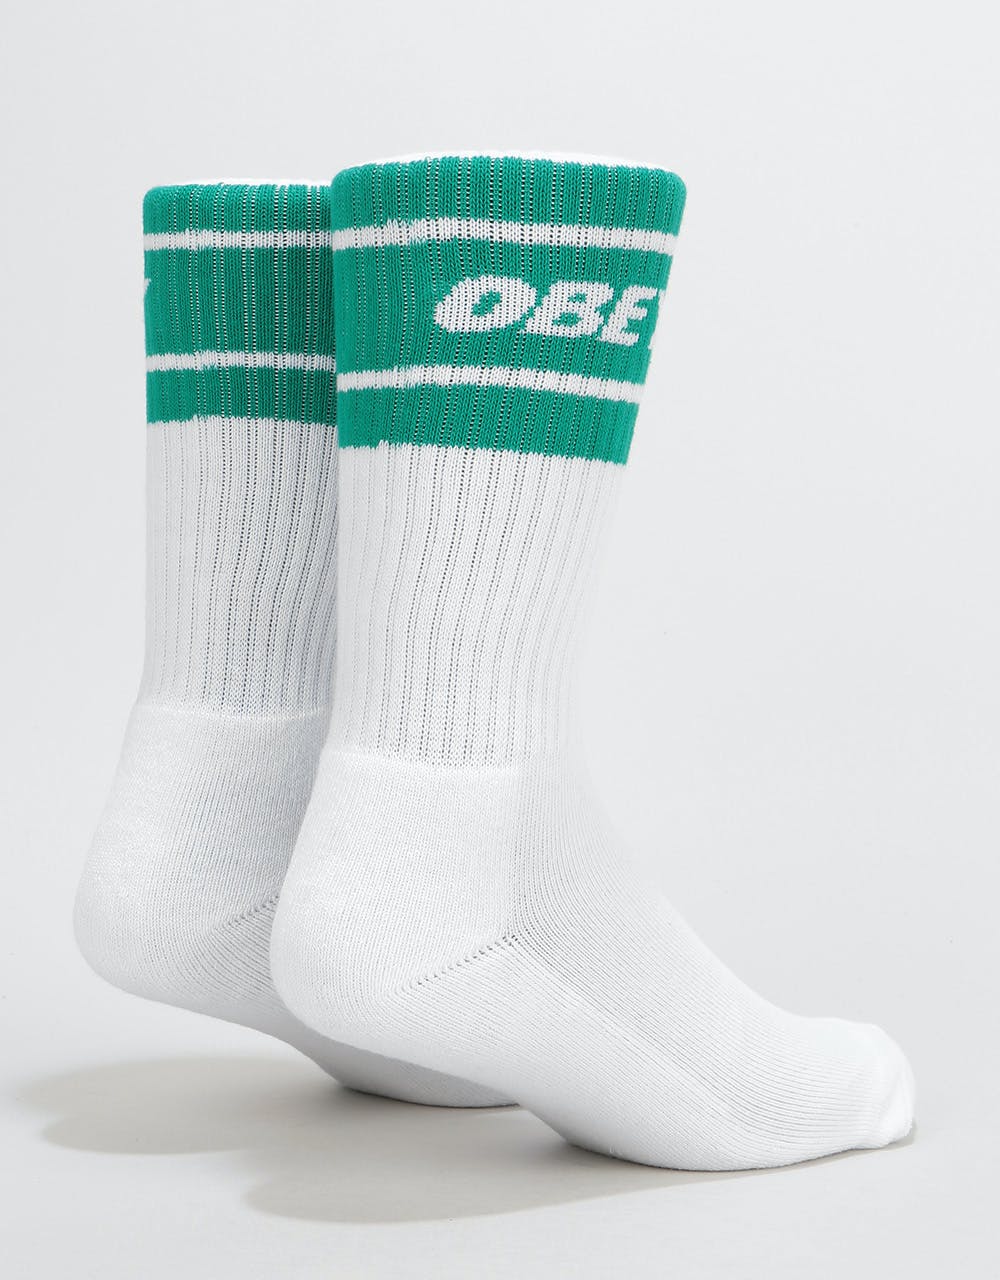 Obey Cooper II Socks - White/Teal